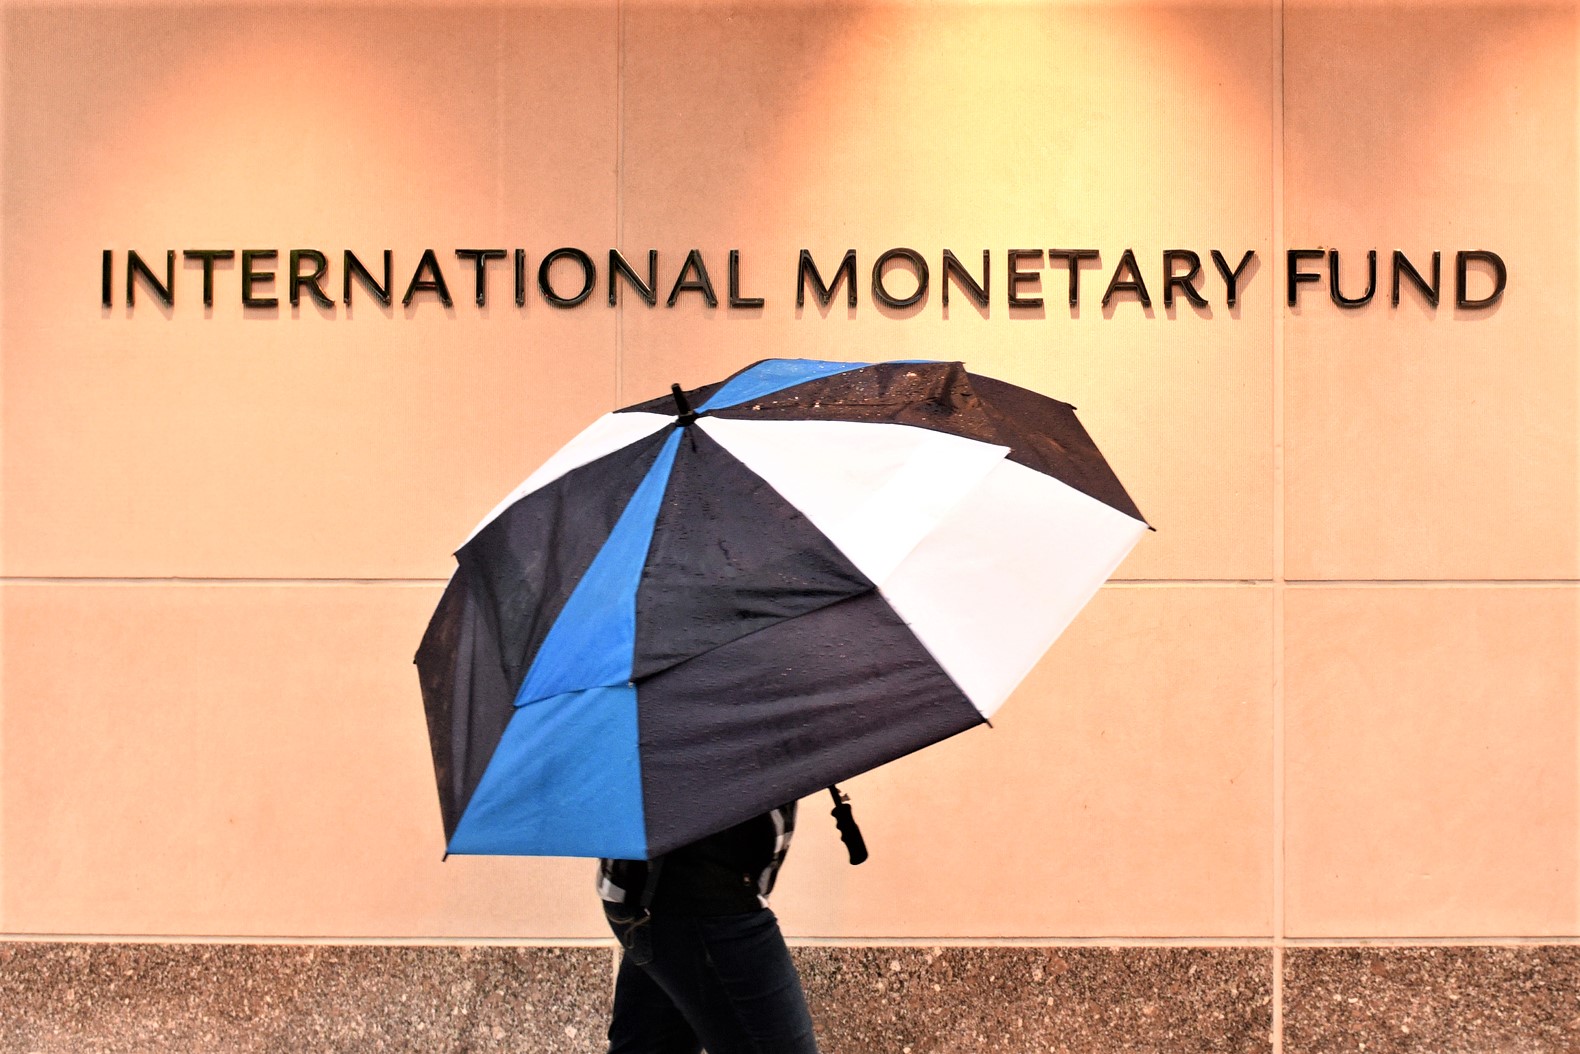 هل قام صندوق النقد الدولي بالترويج للعملات الرقمية عن طريق الخطأ؟